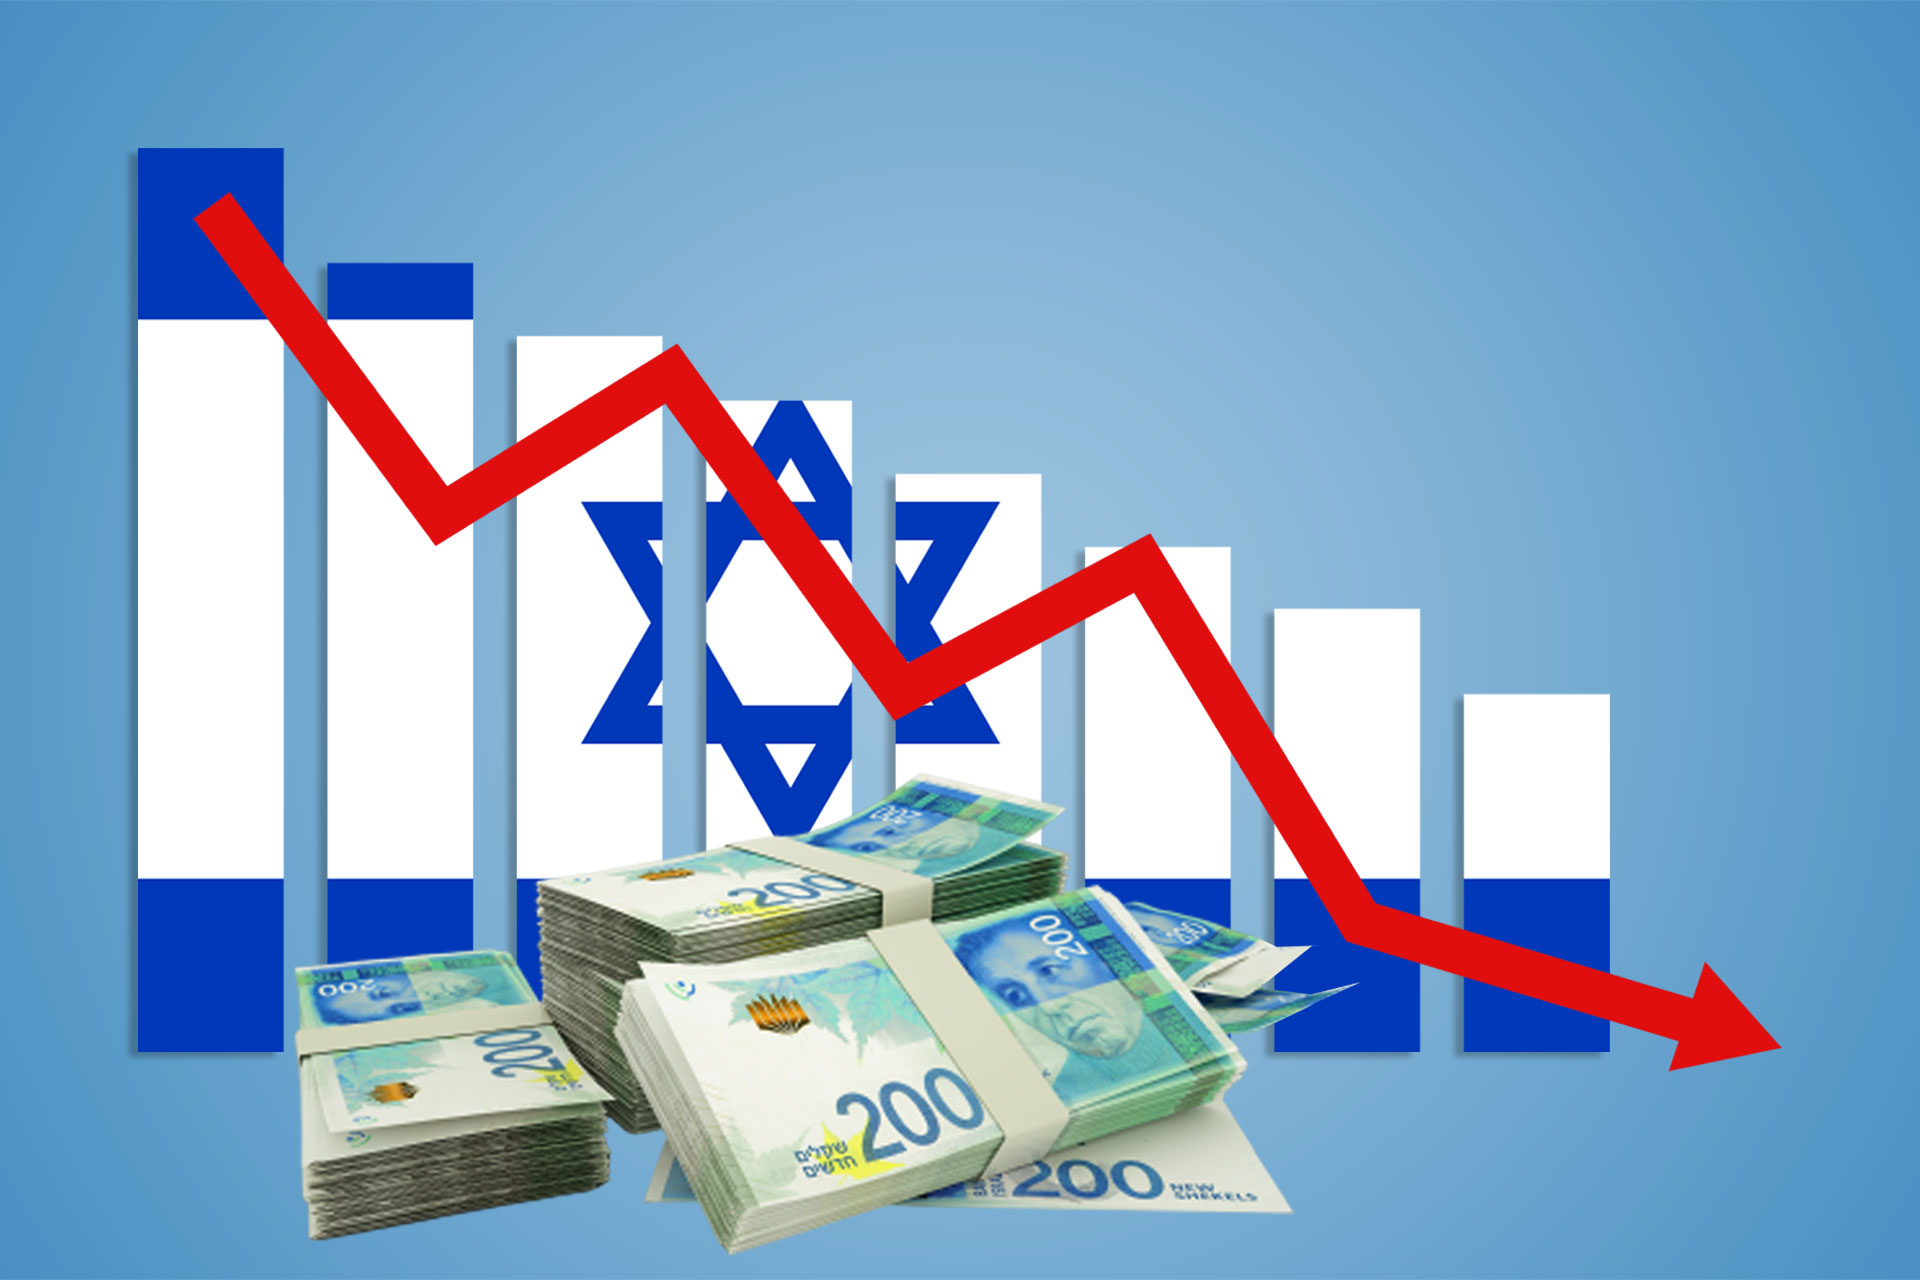 فايننشال تايمز: إسرائيل تقترض 6 مليارات دولار بسبب الحرب على غزة | أخبار – البوكس نيوز